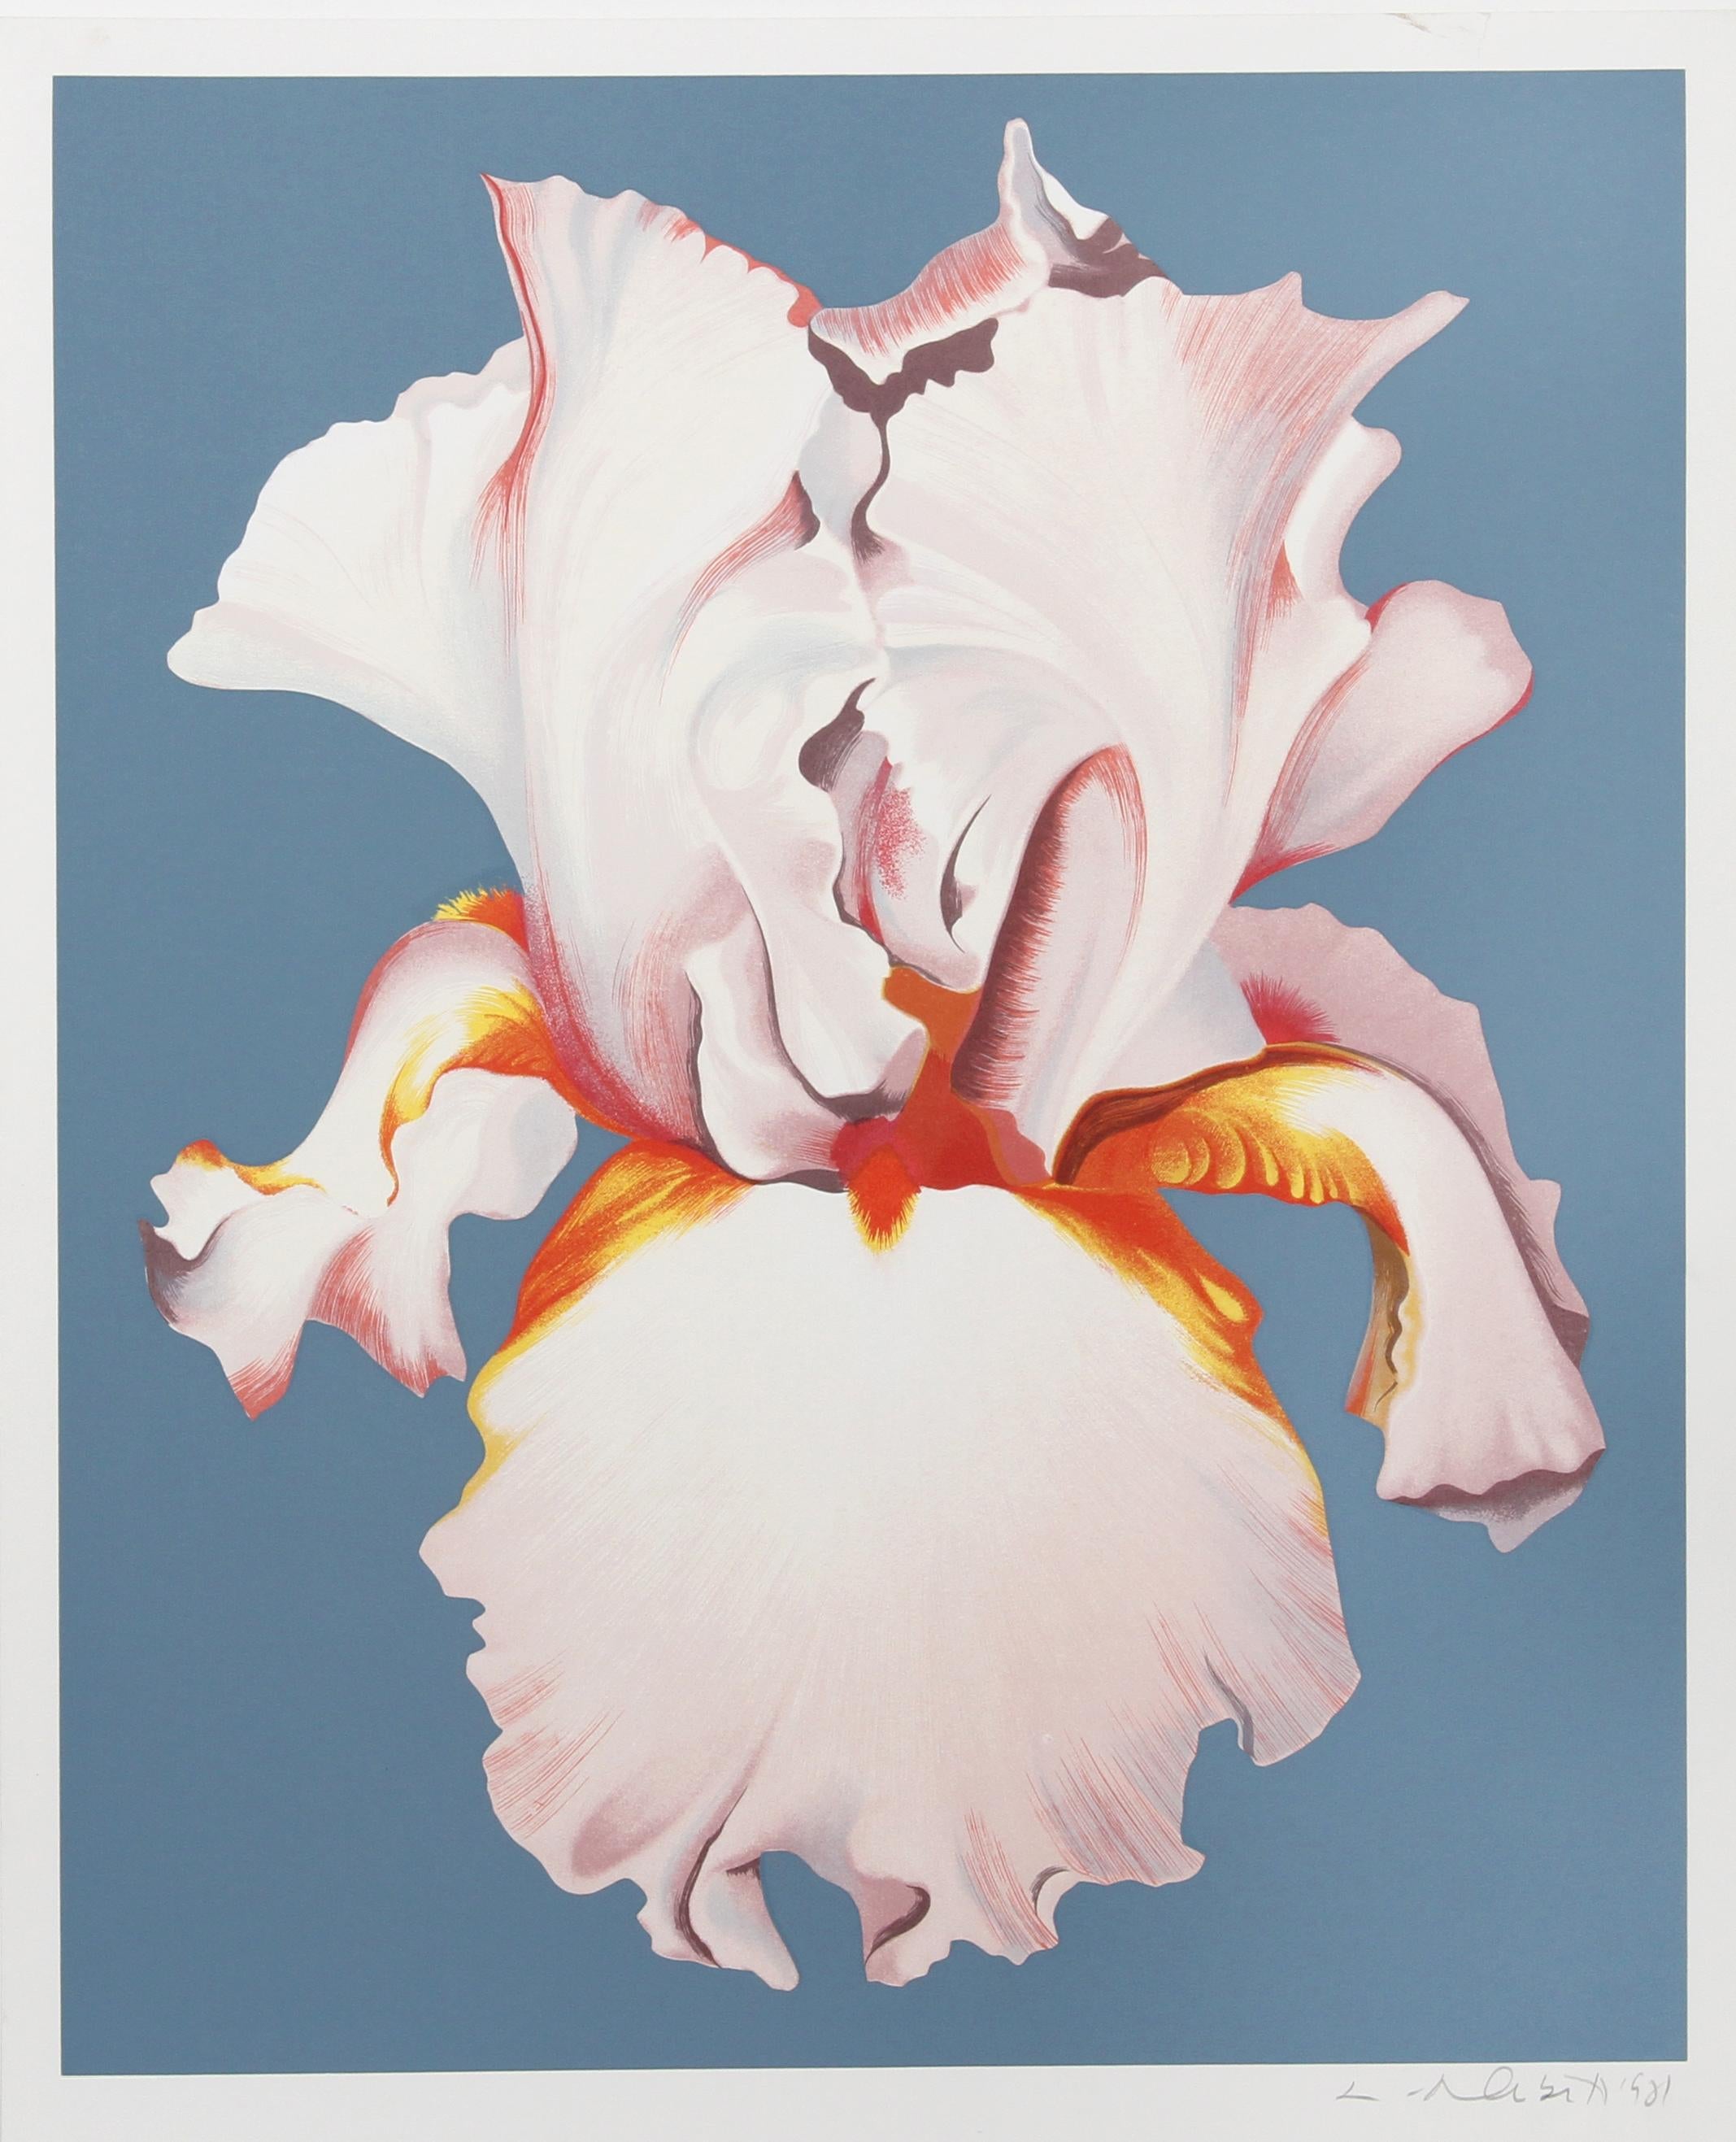 Künstler: Lowell Blair Nesbitt, Amerikaner (1933 - 1993)
Titel: Weiße Iris auf Blau II
Jahr: 1981
Medium: Serigraphie, signiert und nummeriert mit Bleistift
Auflage: 200, HC
Größe: 32 Zoll x 26 Zoll (81,28 cm x 66,04 cm)